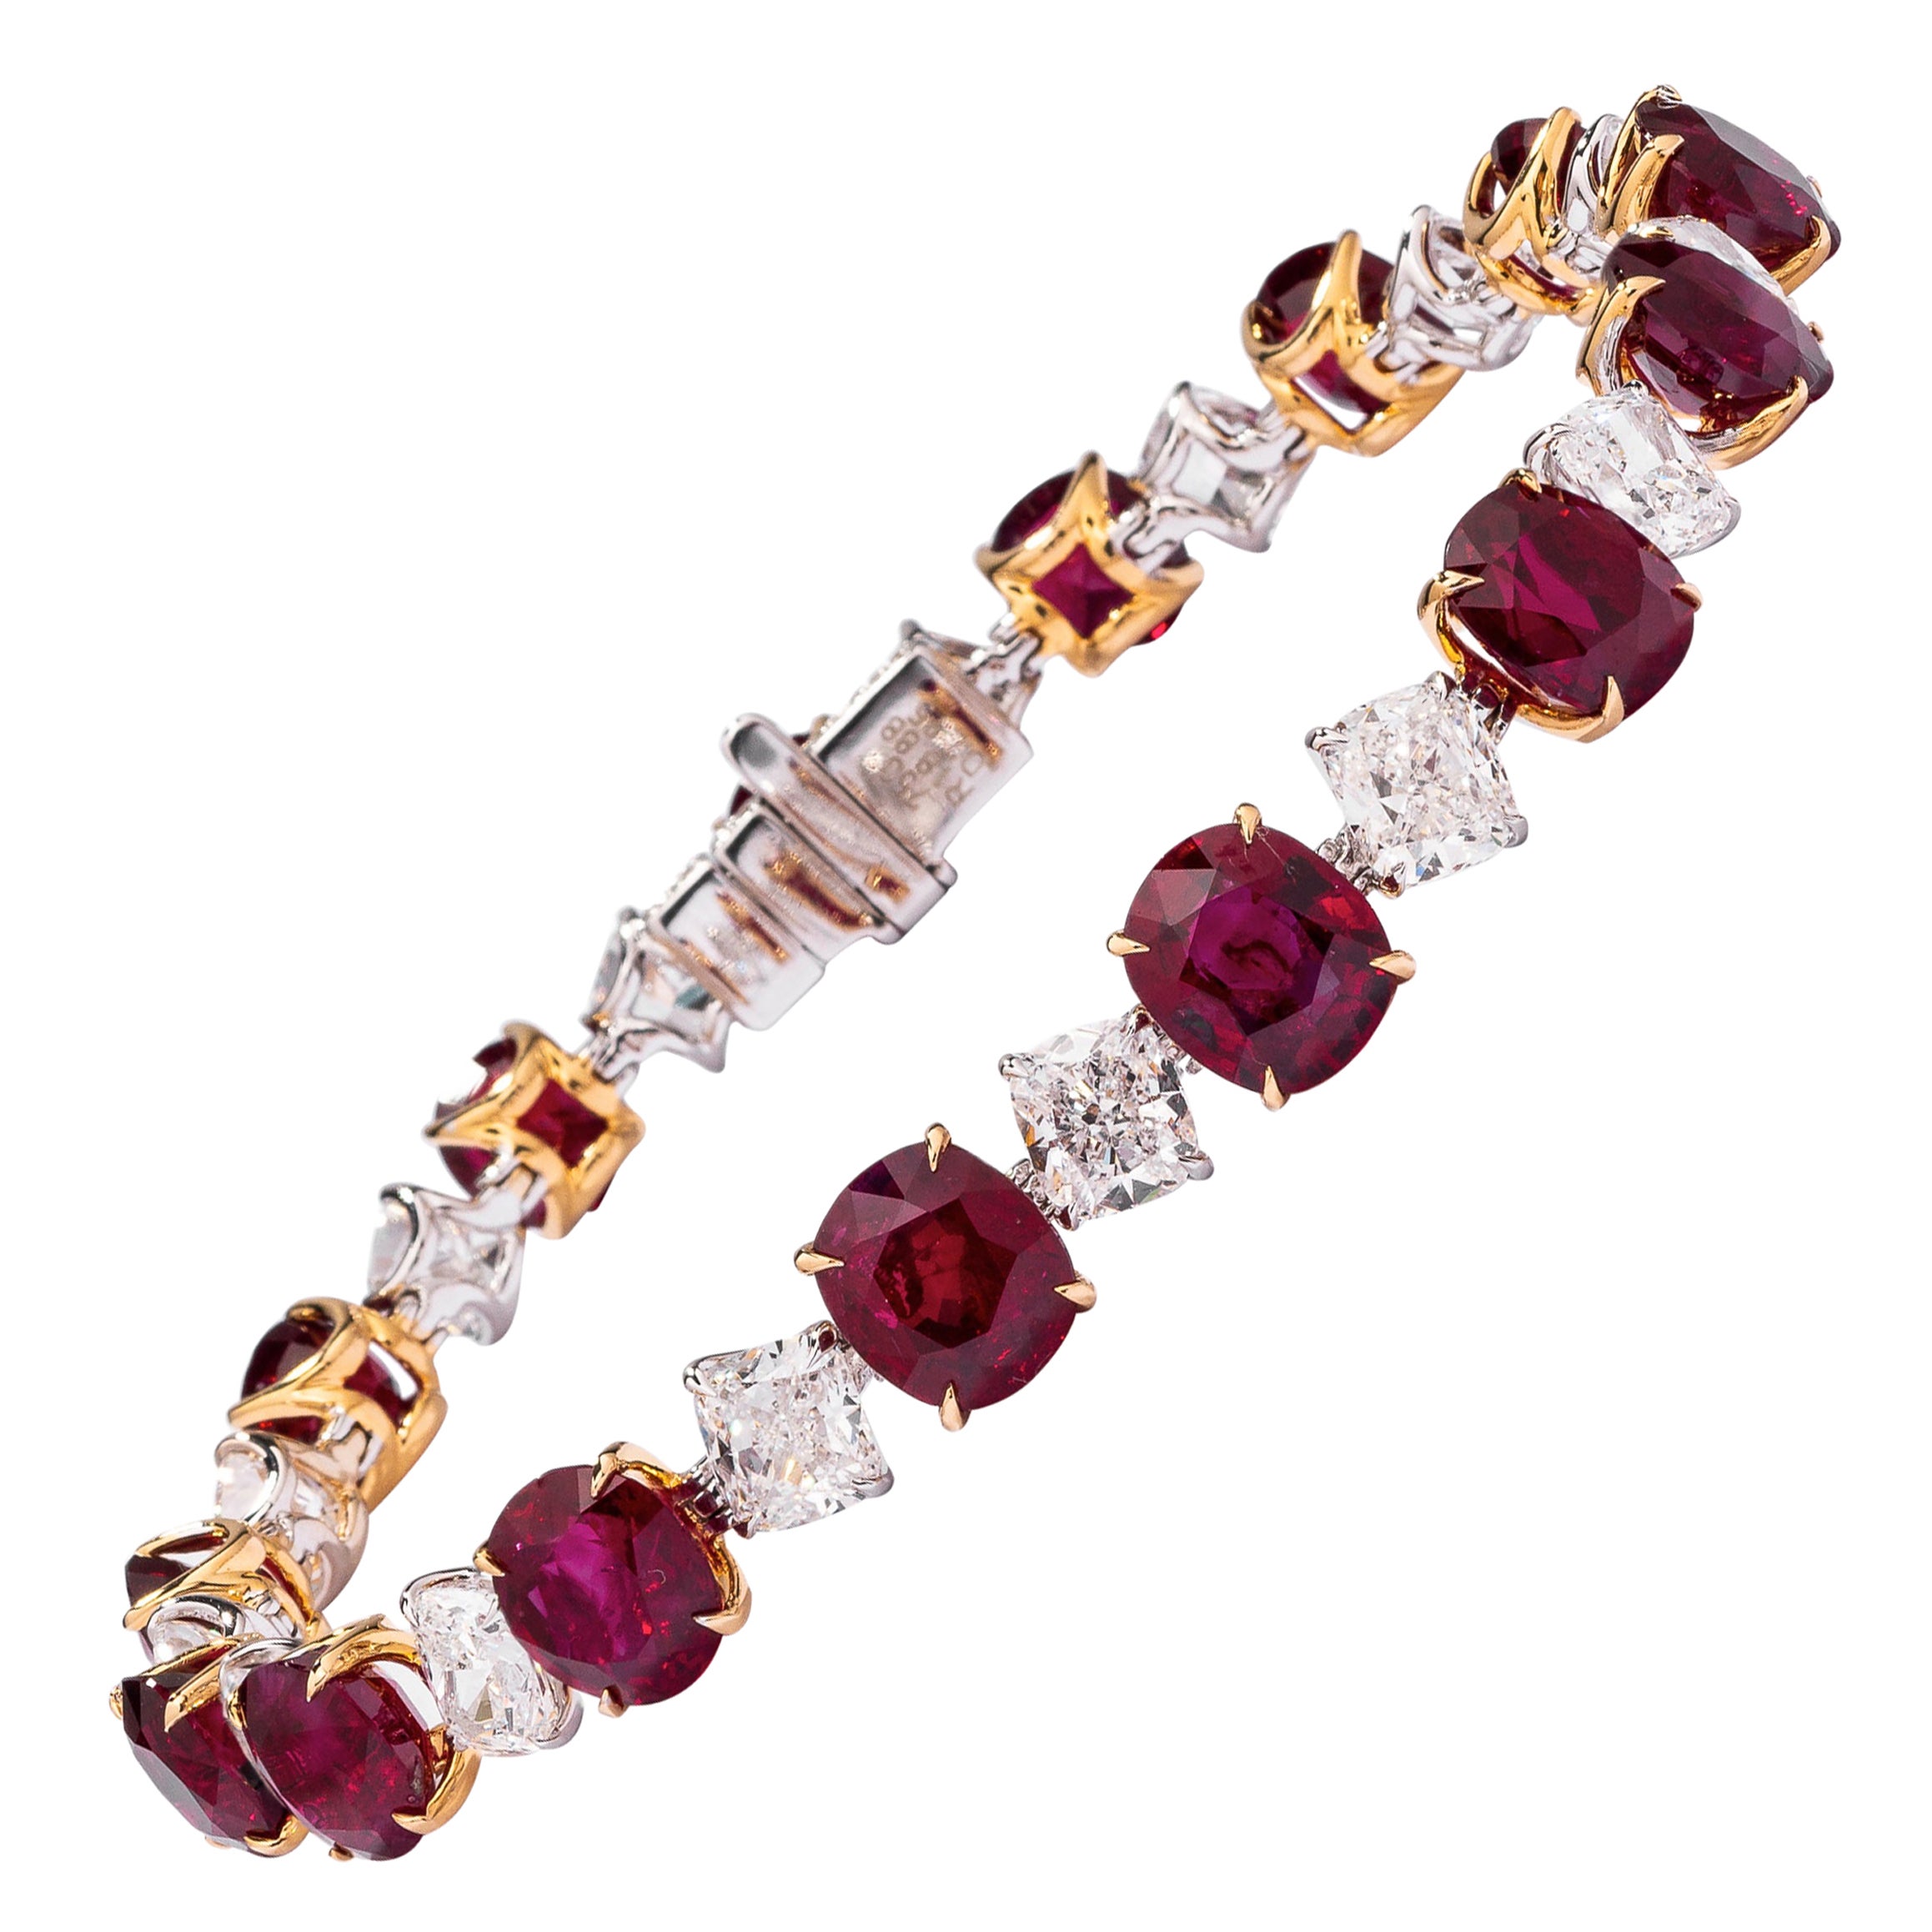 Bracelet en or 18 carats avec rubis de Birmanie certifié Gubelin de 26,92 carats